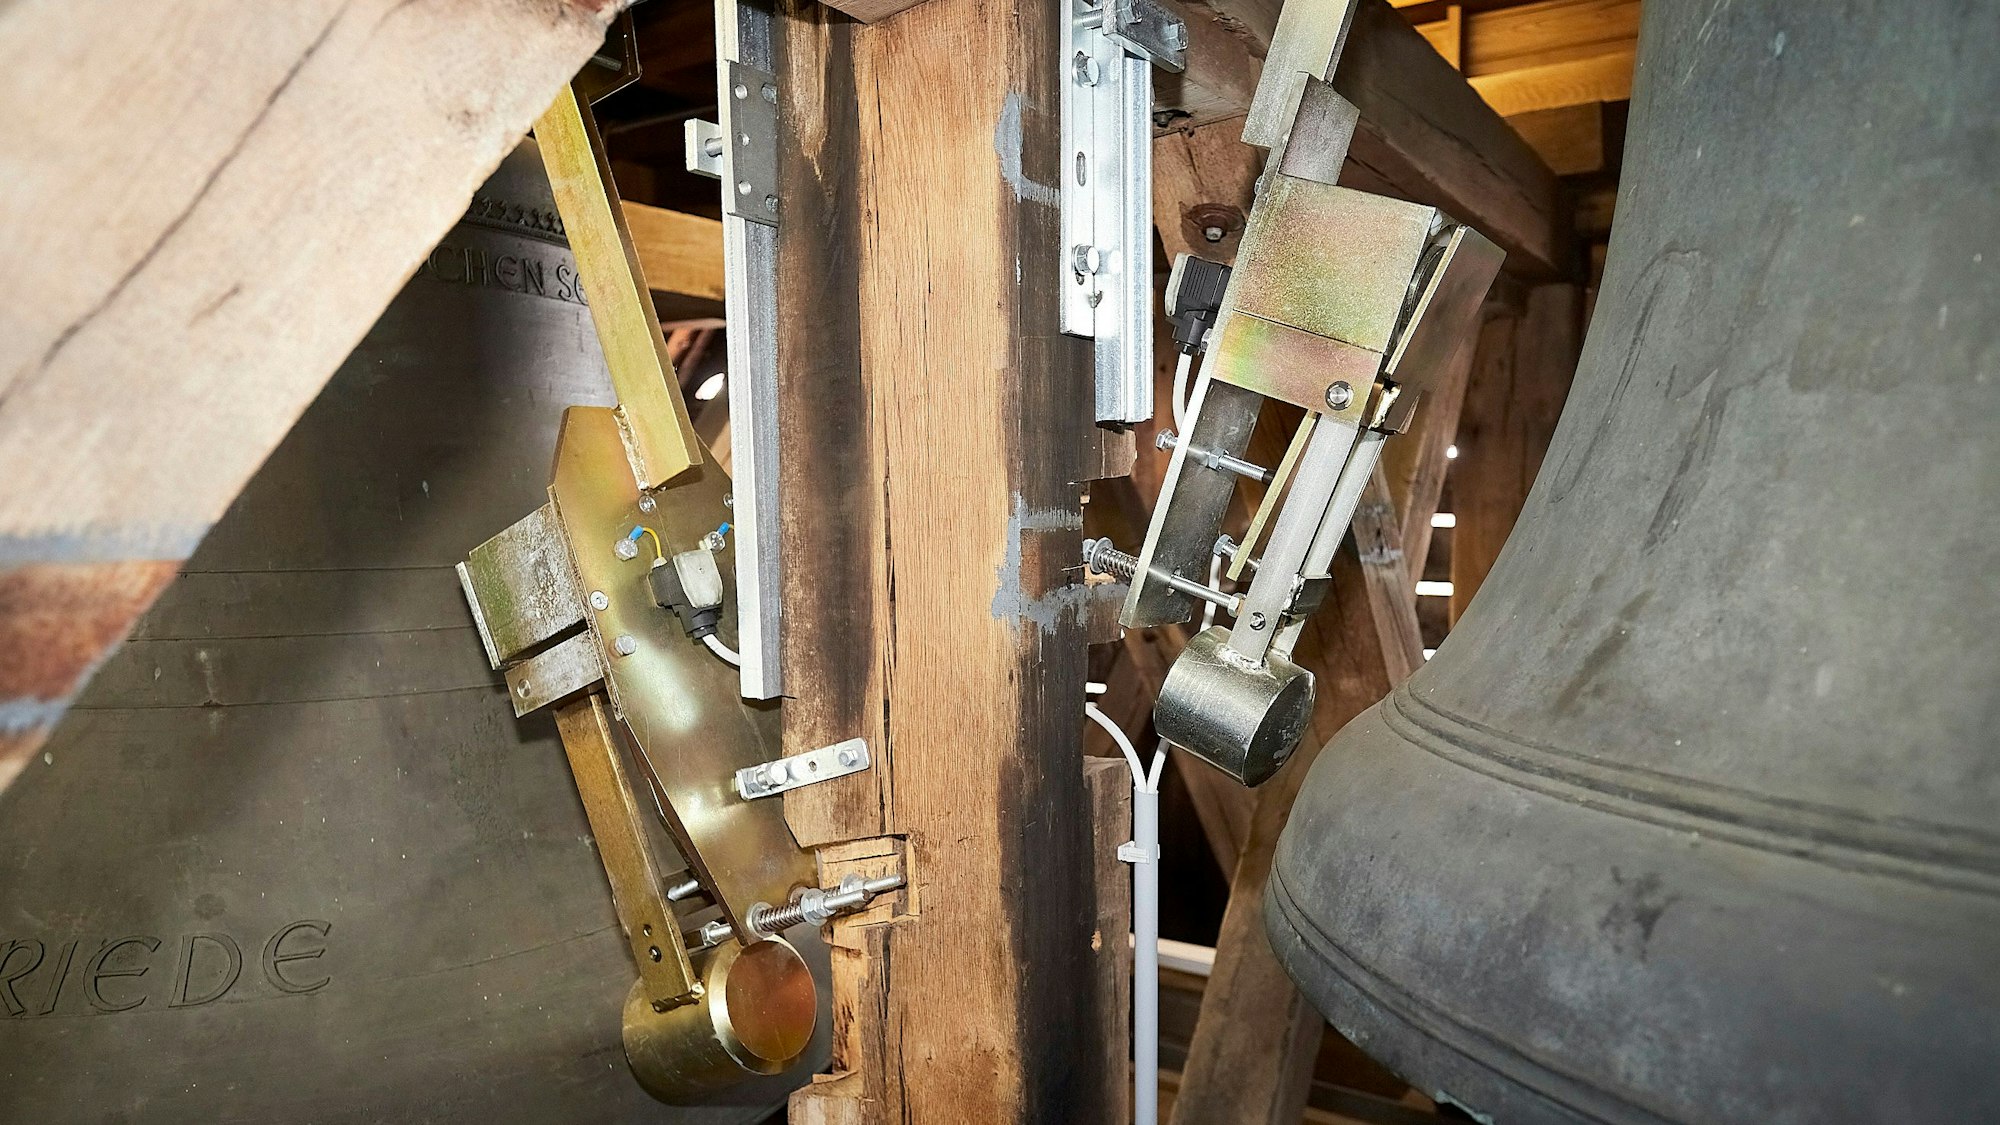 An einem alten Glockenstuhl aus Holz sind neue, pneumatische Schlagwerke angebracht, die eine Glocke, die zum Teil zum rechts im Bild zu sehen ist, zum Klingen bringen.